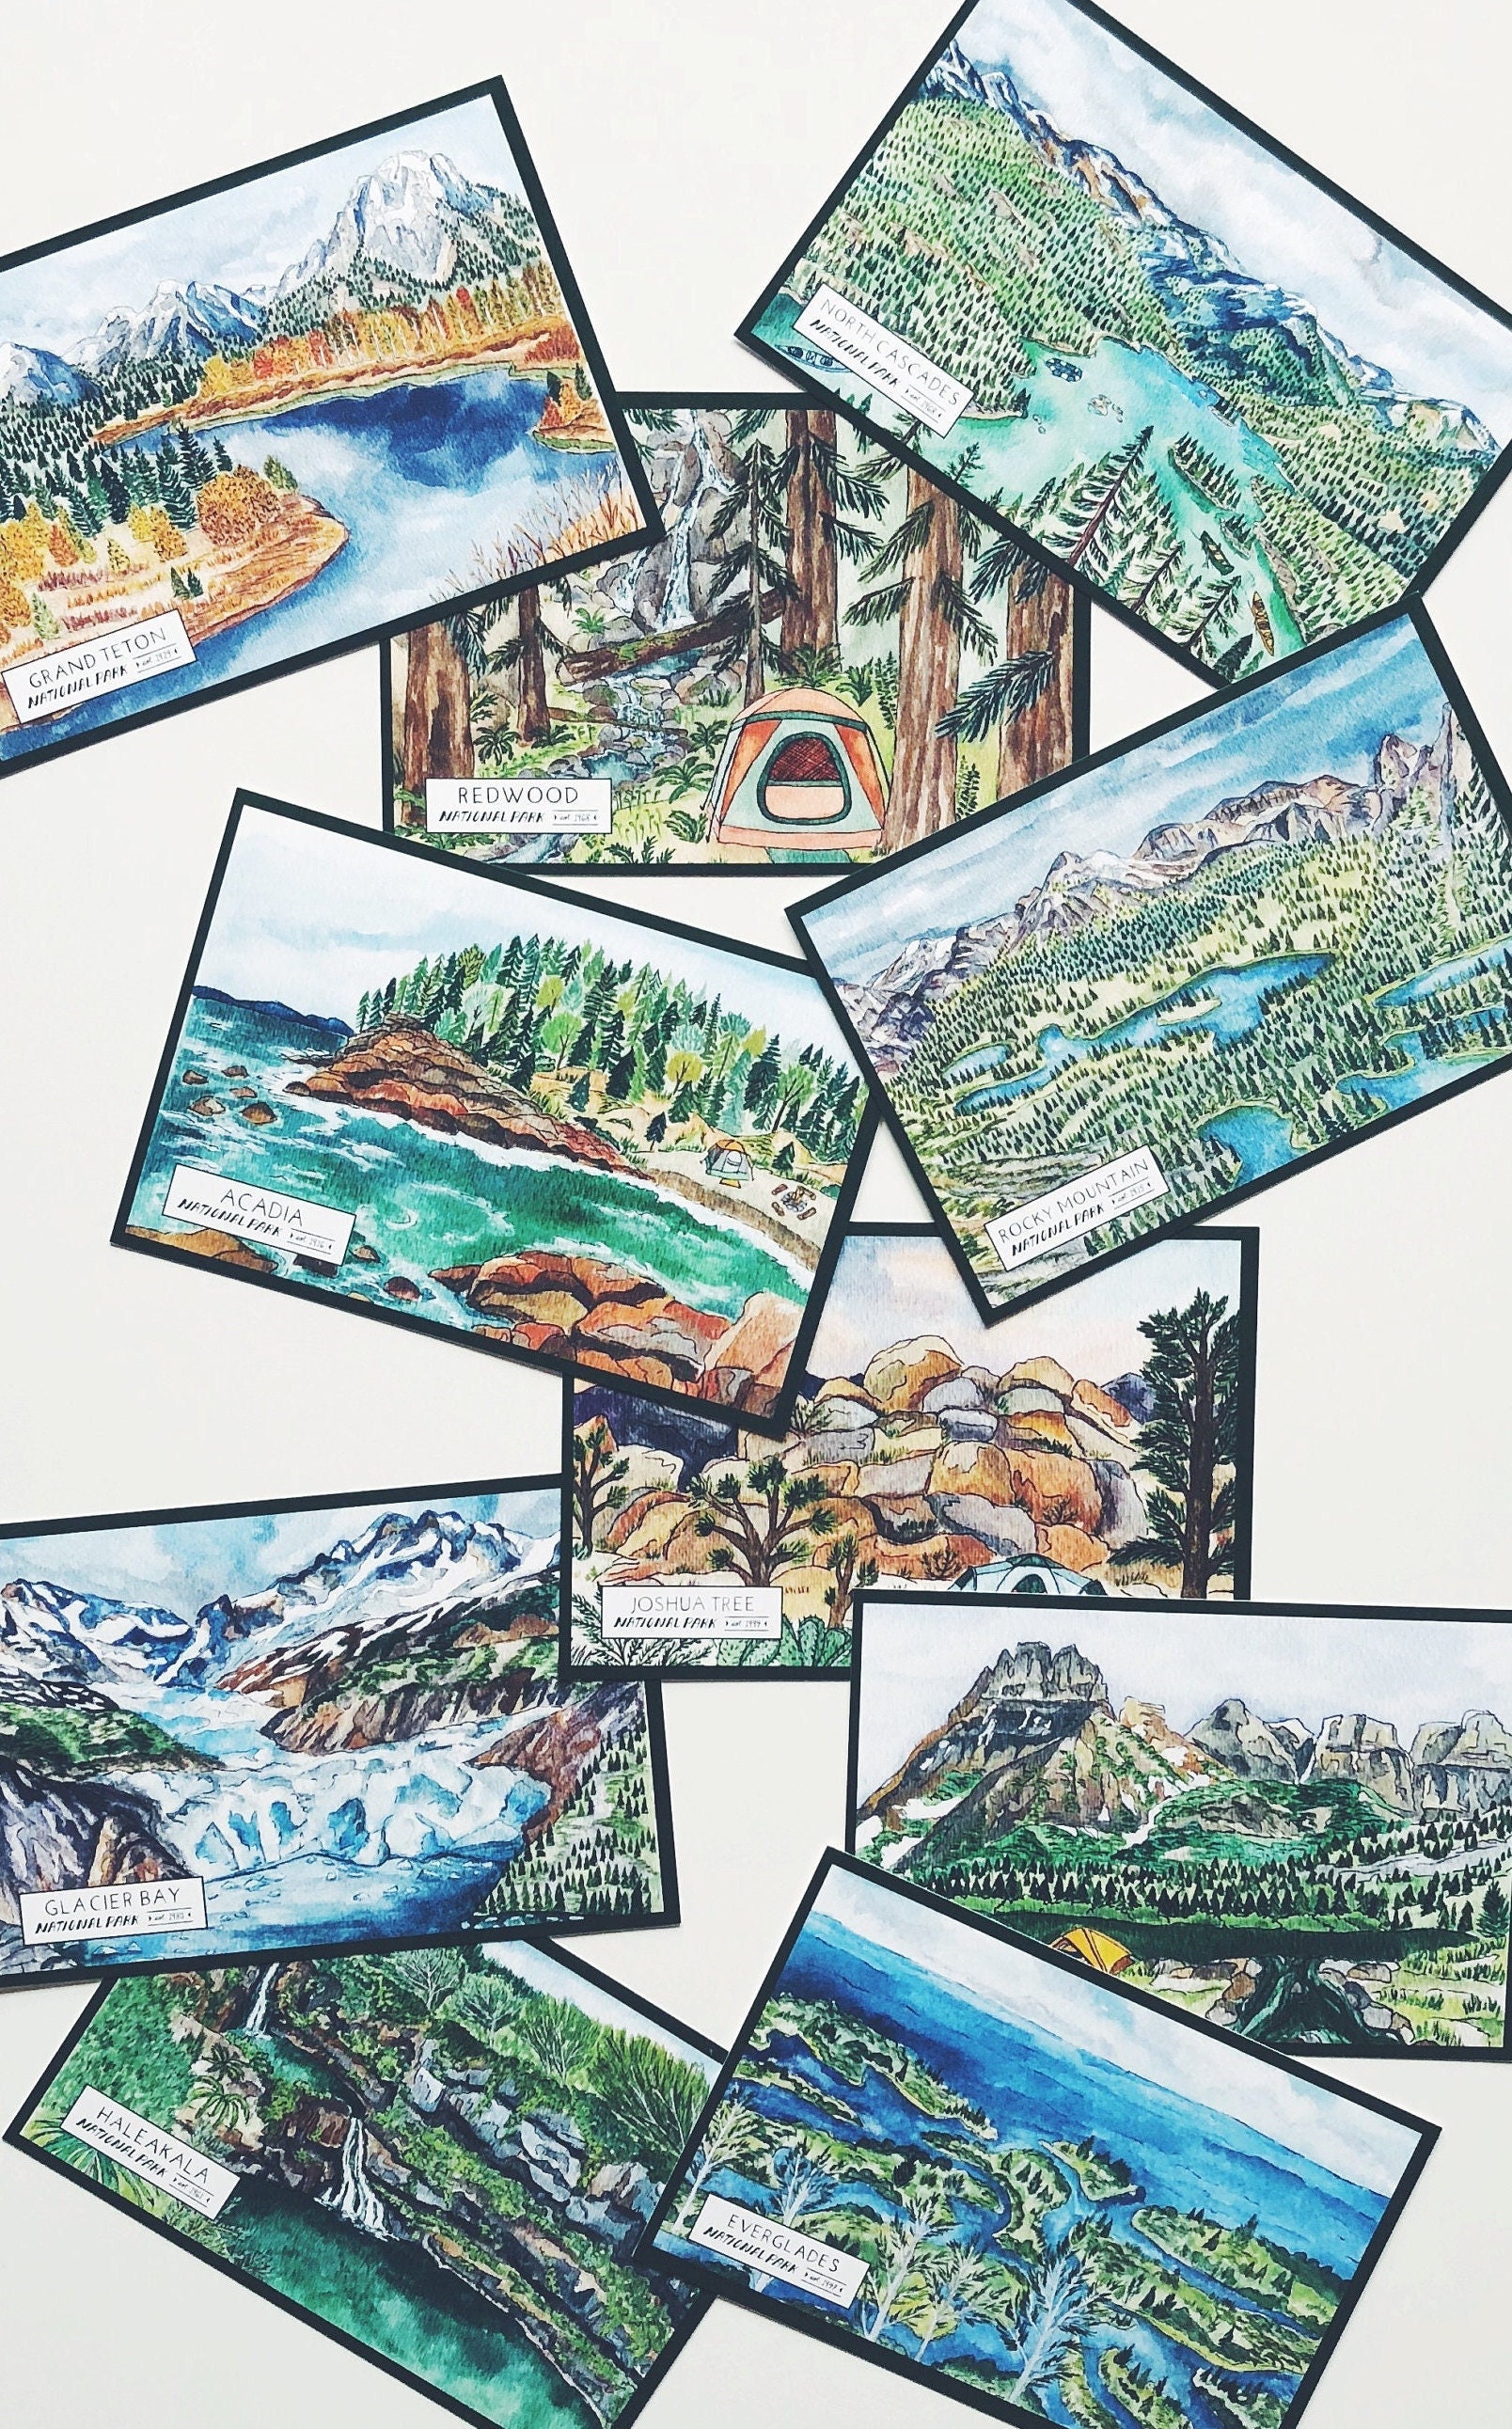 Travel Stamp Album 3rd ed - North Cascades Institute